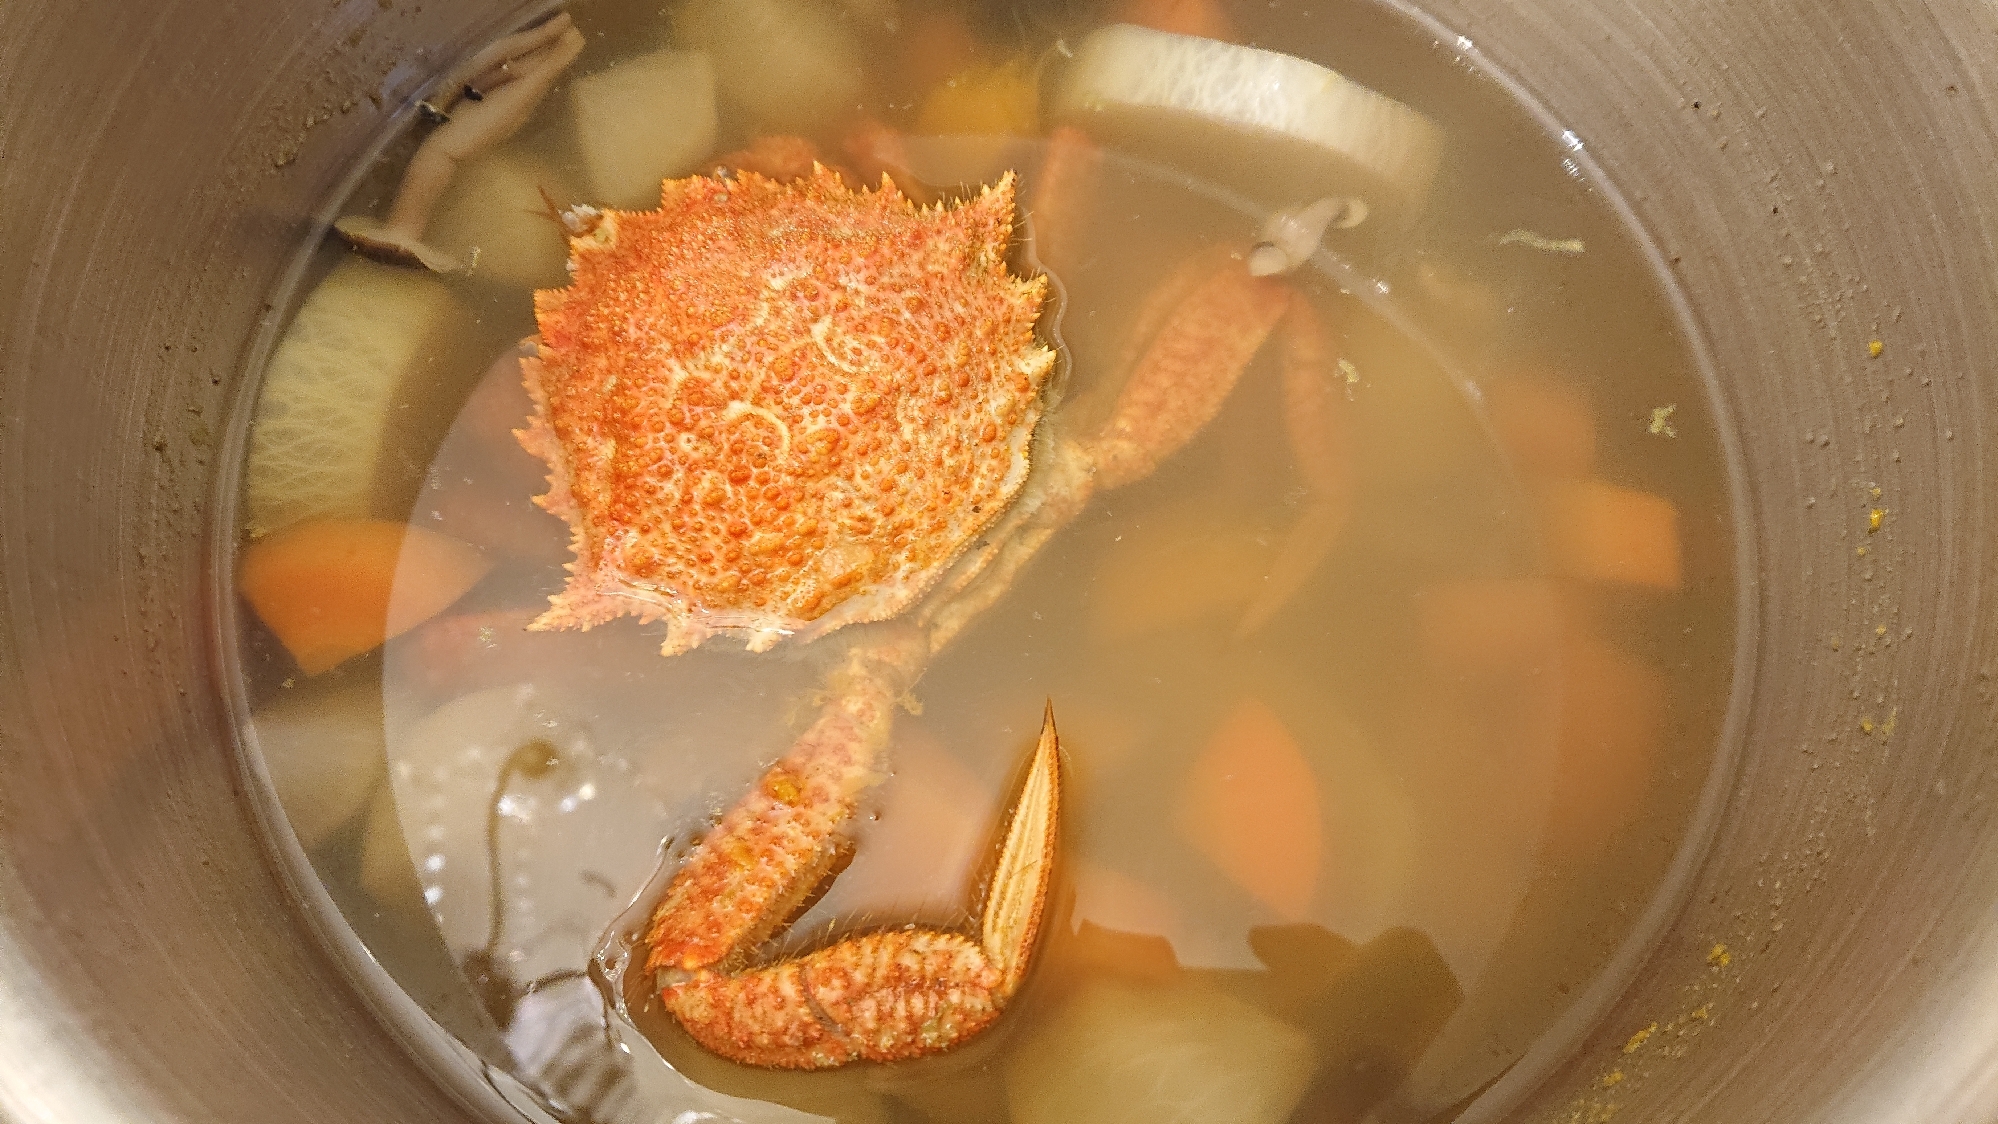 クリガニ(栗蟹)とたっぷり野菜の鍋